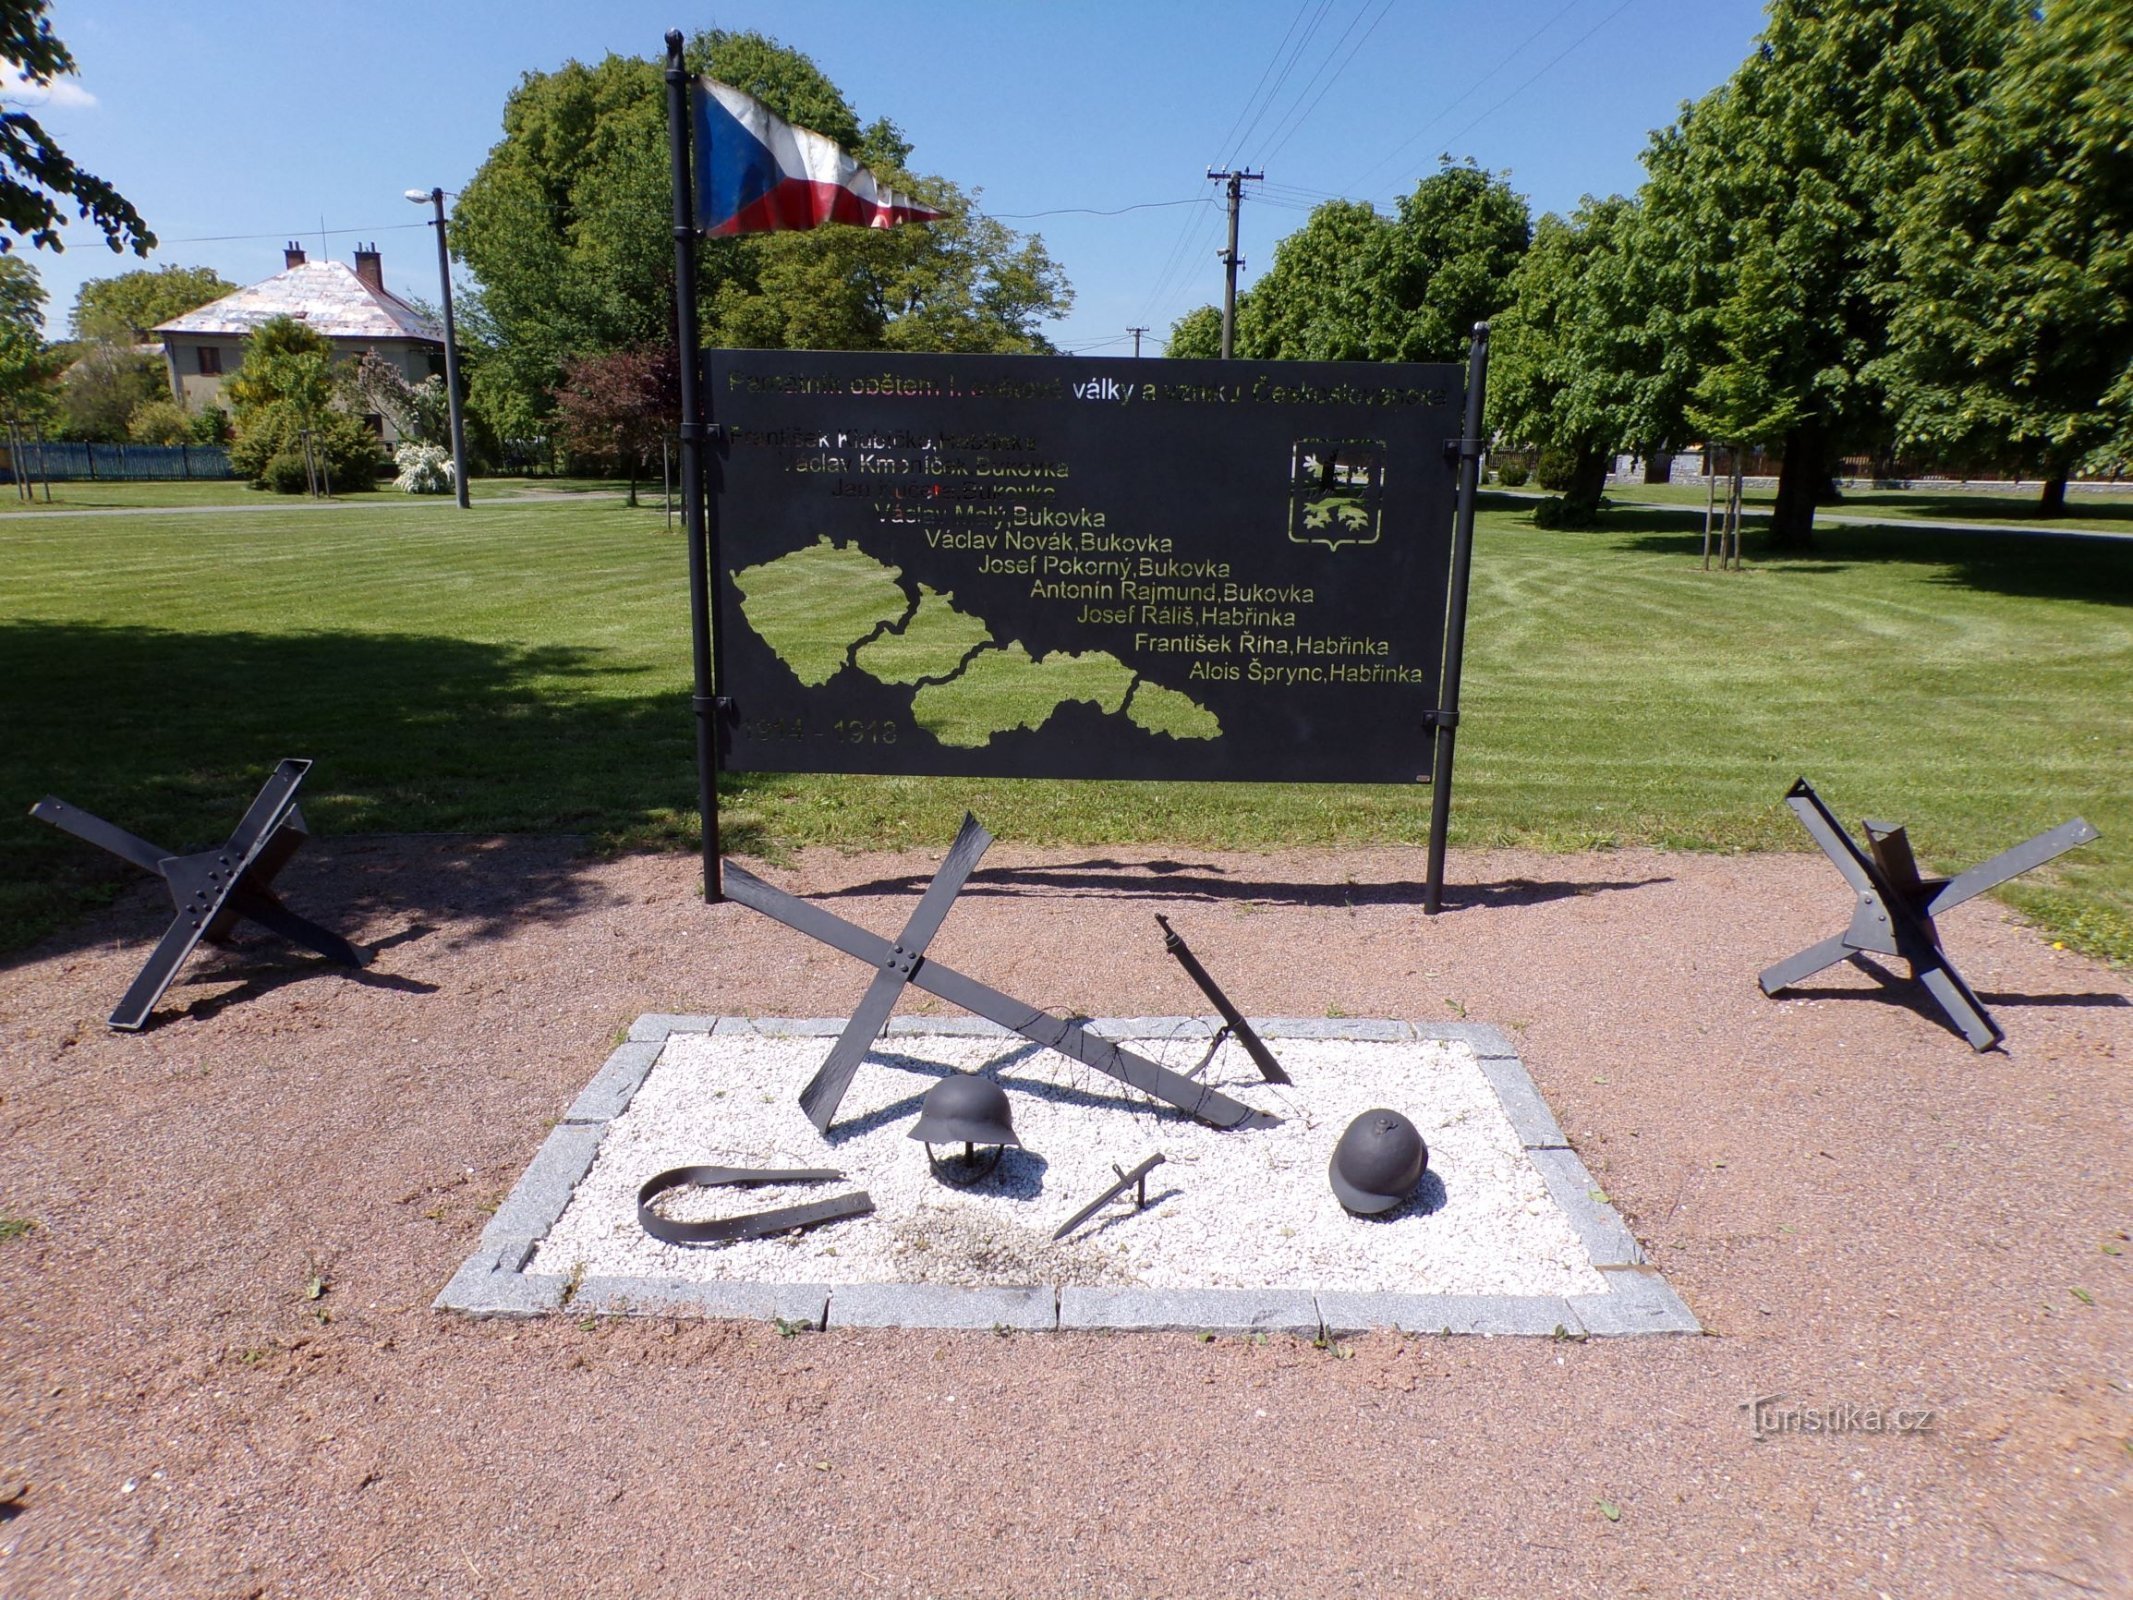 第一次世界大戦の犠牲者とチェコスロバキアの創設の記念碑 (Habřinka、1 年 3.6.2021 月 XNUMX 日)